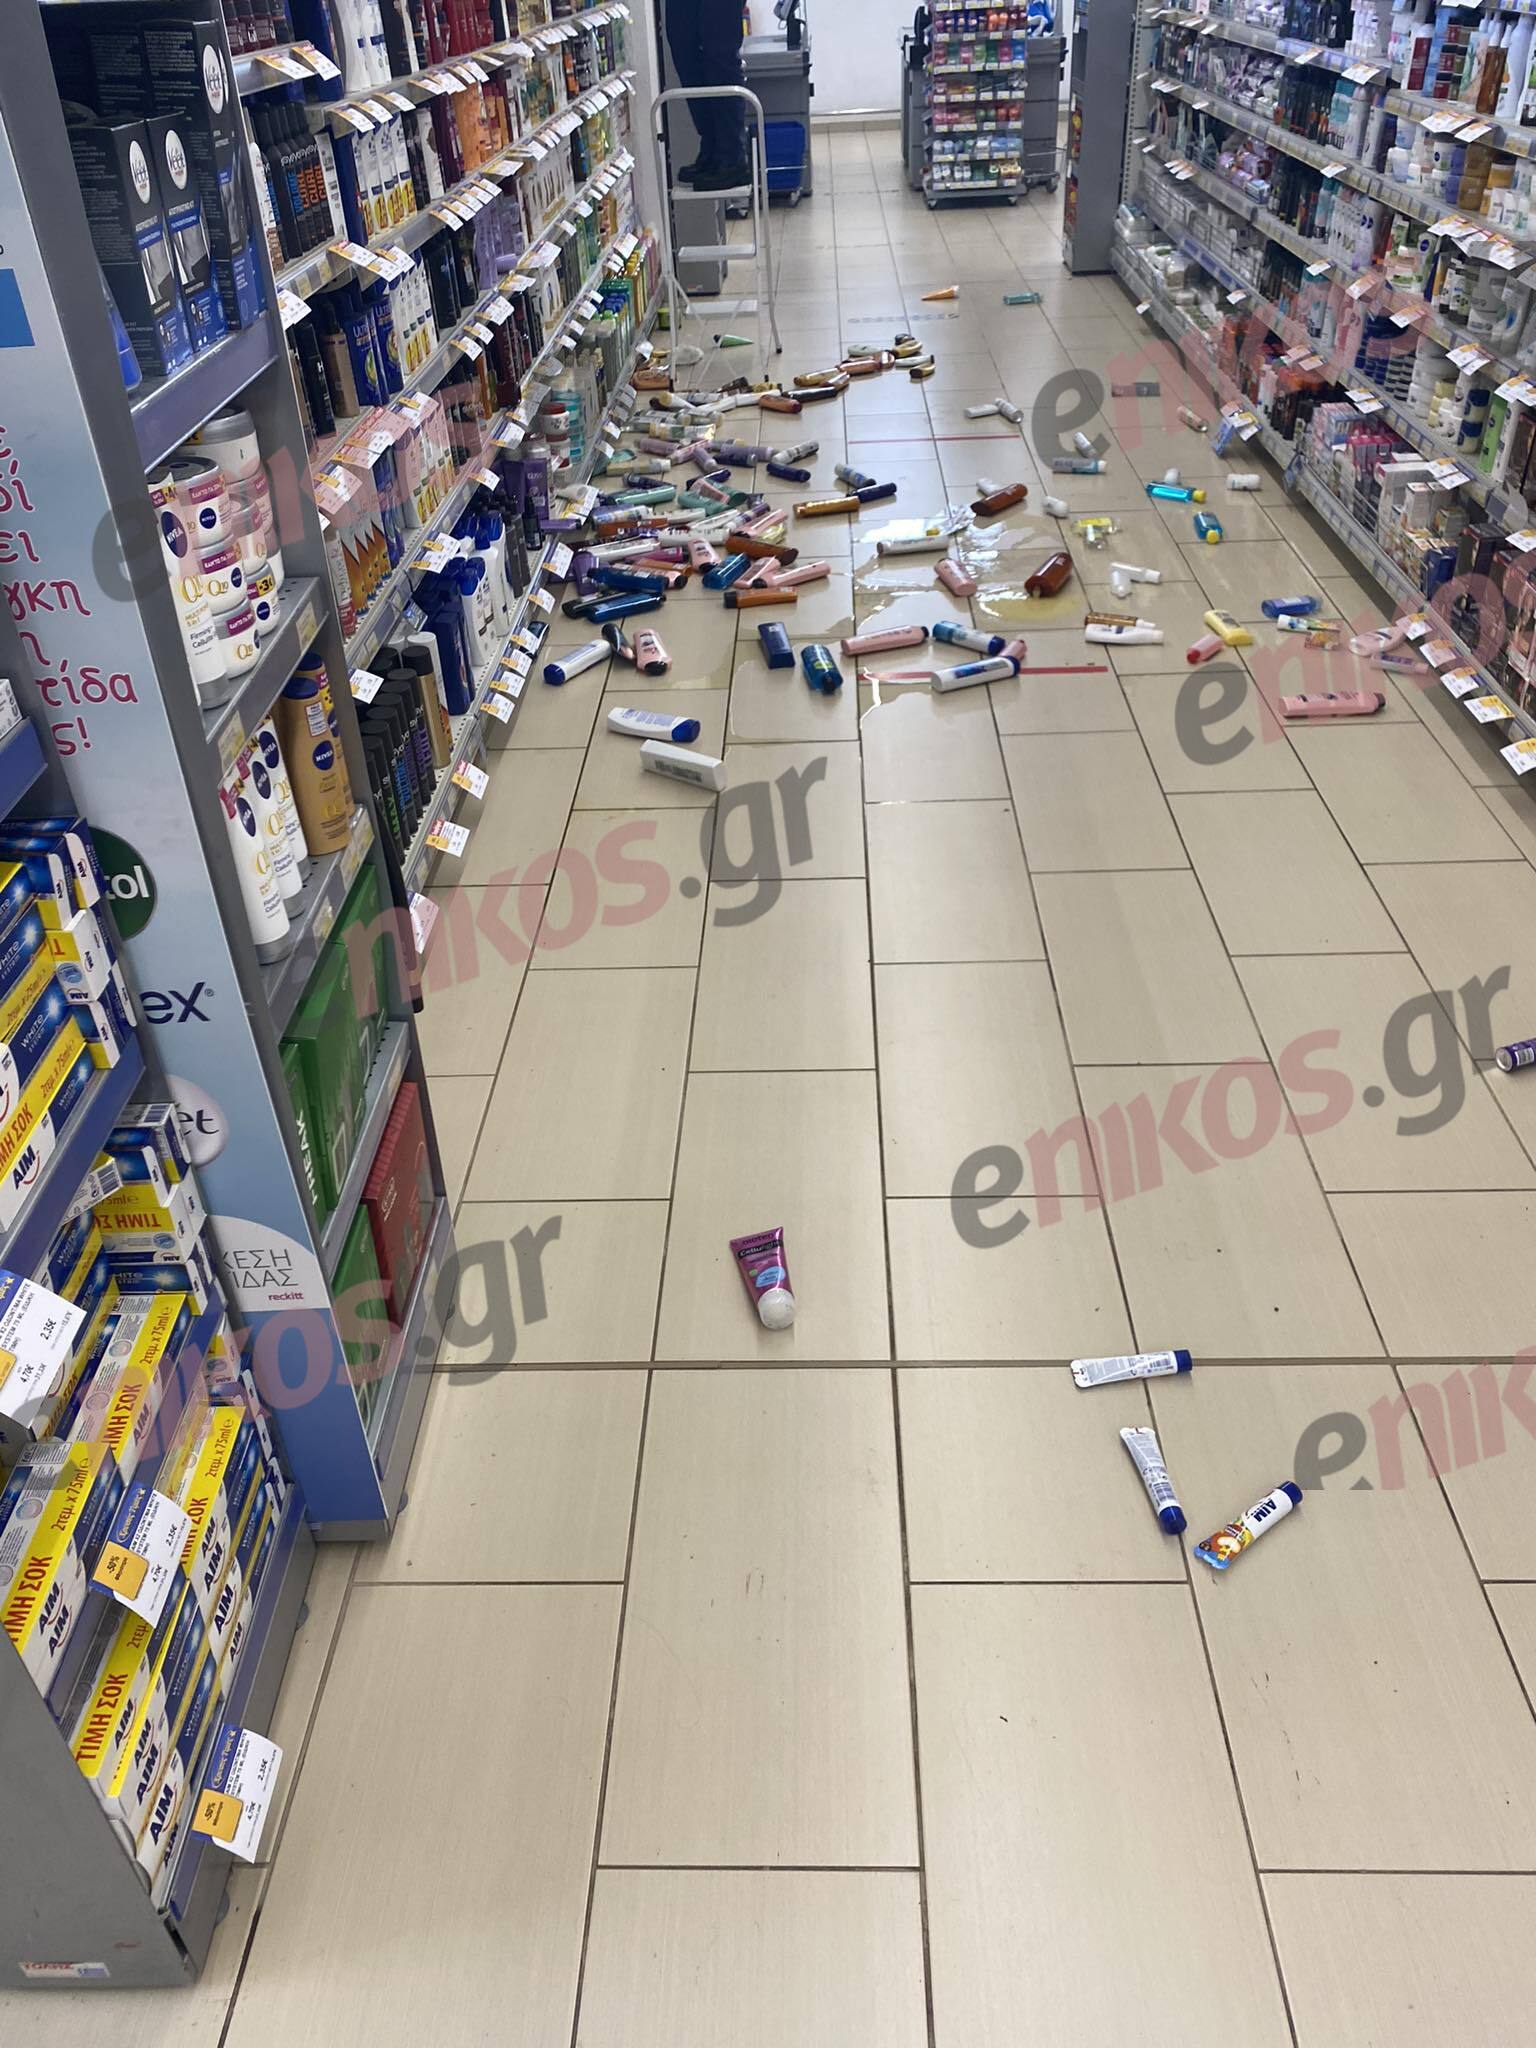 σούπερ μάρκετ σεισμός Μαντούδι  Σεισμός στην Εύβοια: Έπεσαν προϊόντα από τα ράφια σούπερ μάρκετ στο Μαντούδι – Έκλεισαν τα σχολεία mantoudi seismos4